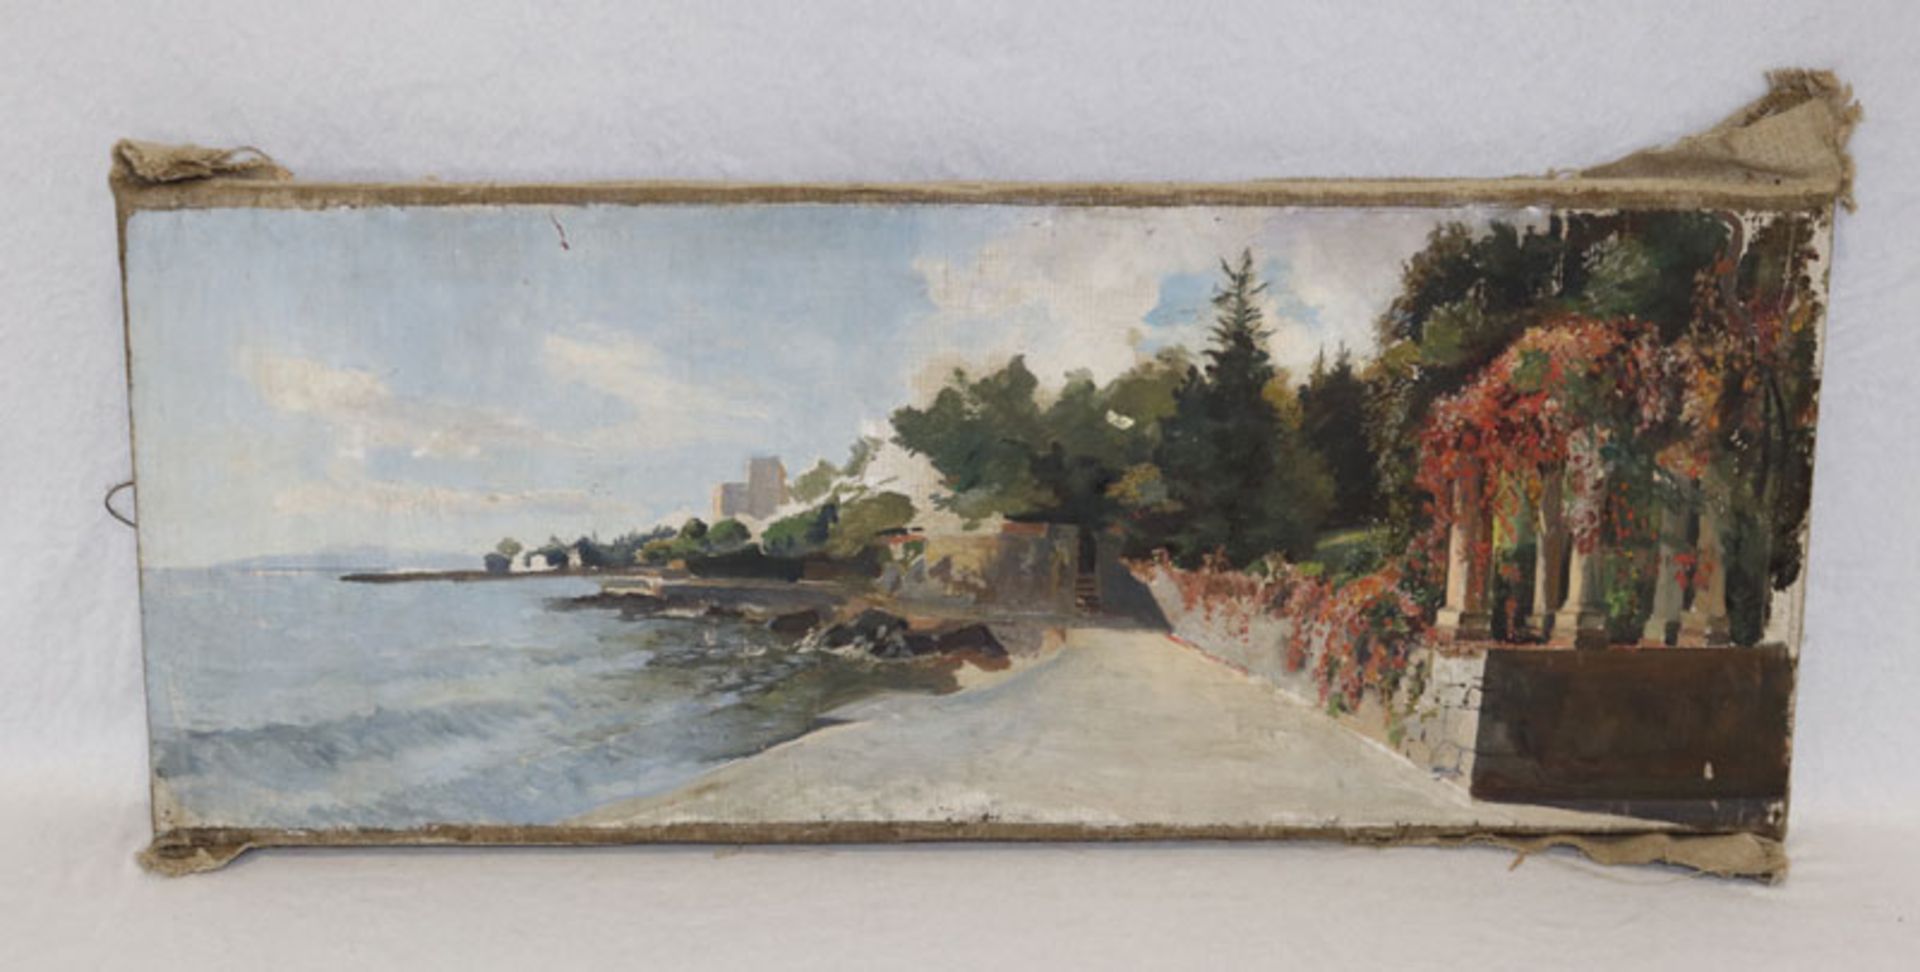 Gemälde ÖL/LW 'Südliche Ufer-Szenerie', ohne Rahmen, teils beschädigt, 30 cm x 76 cm